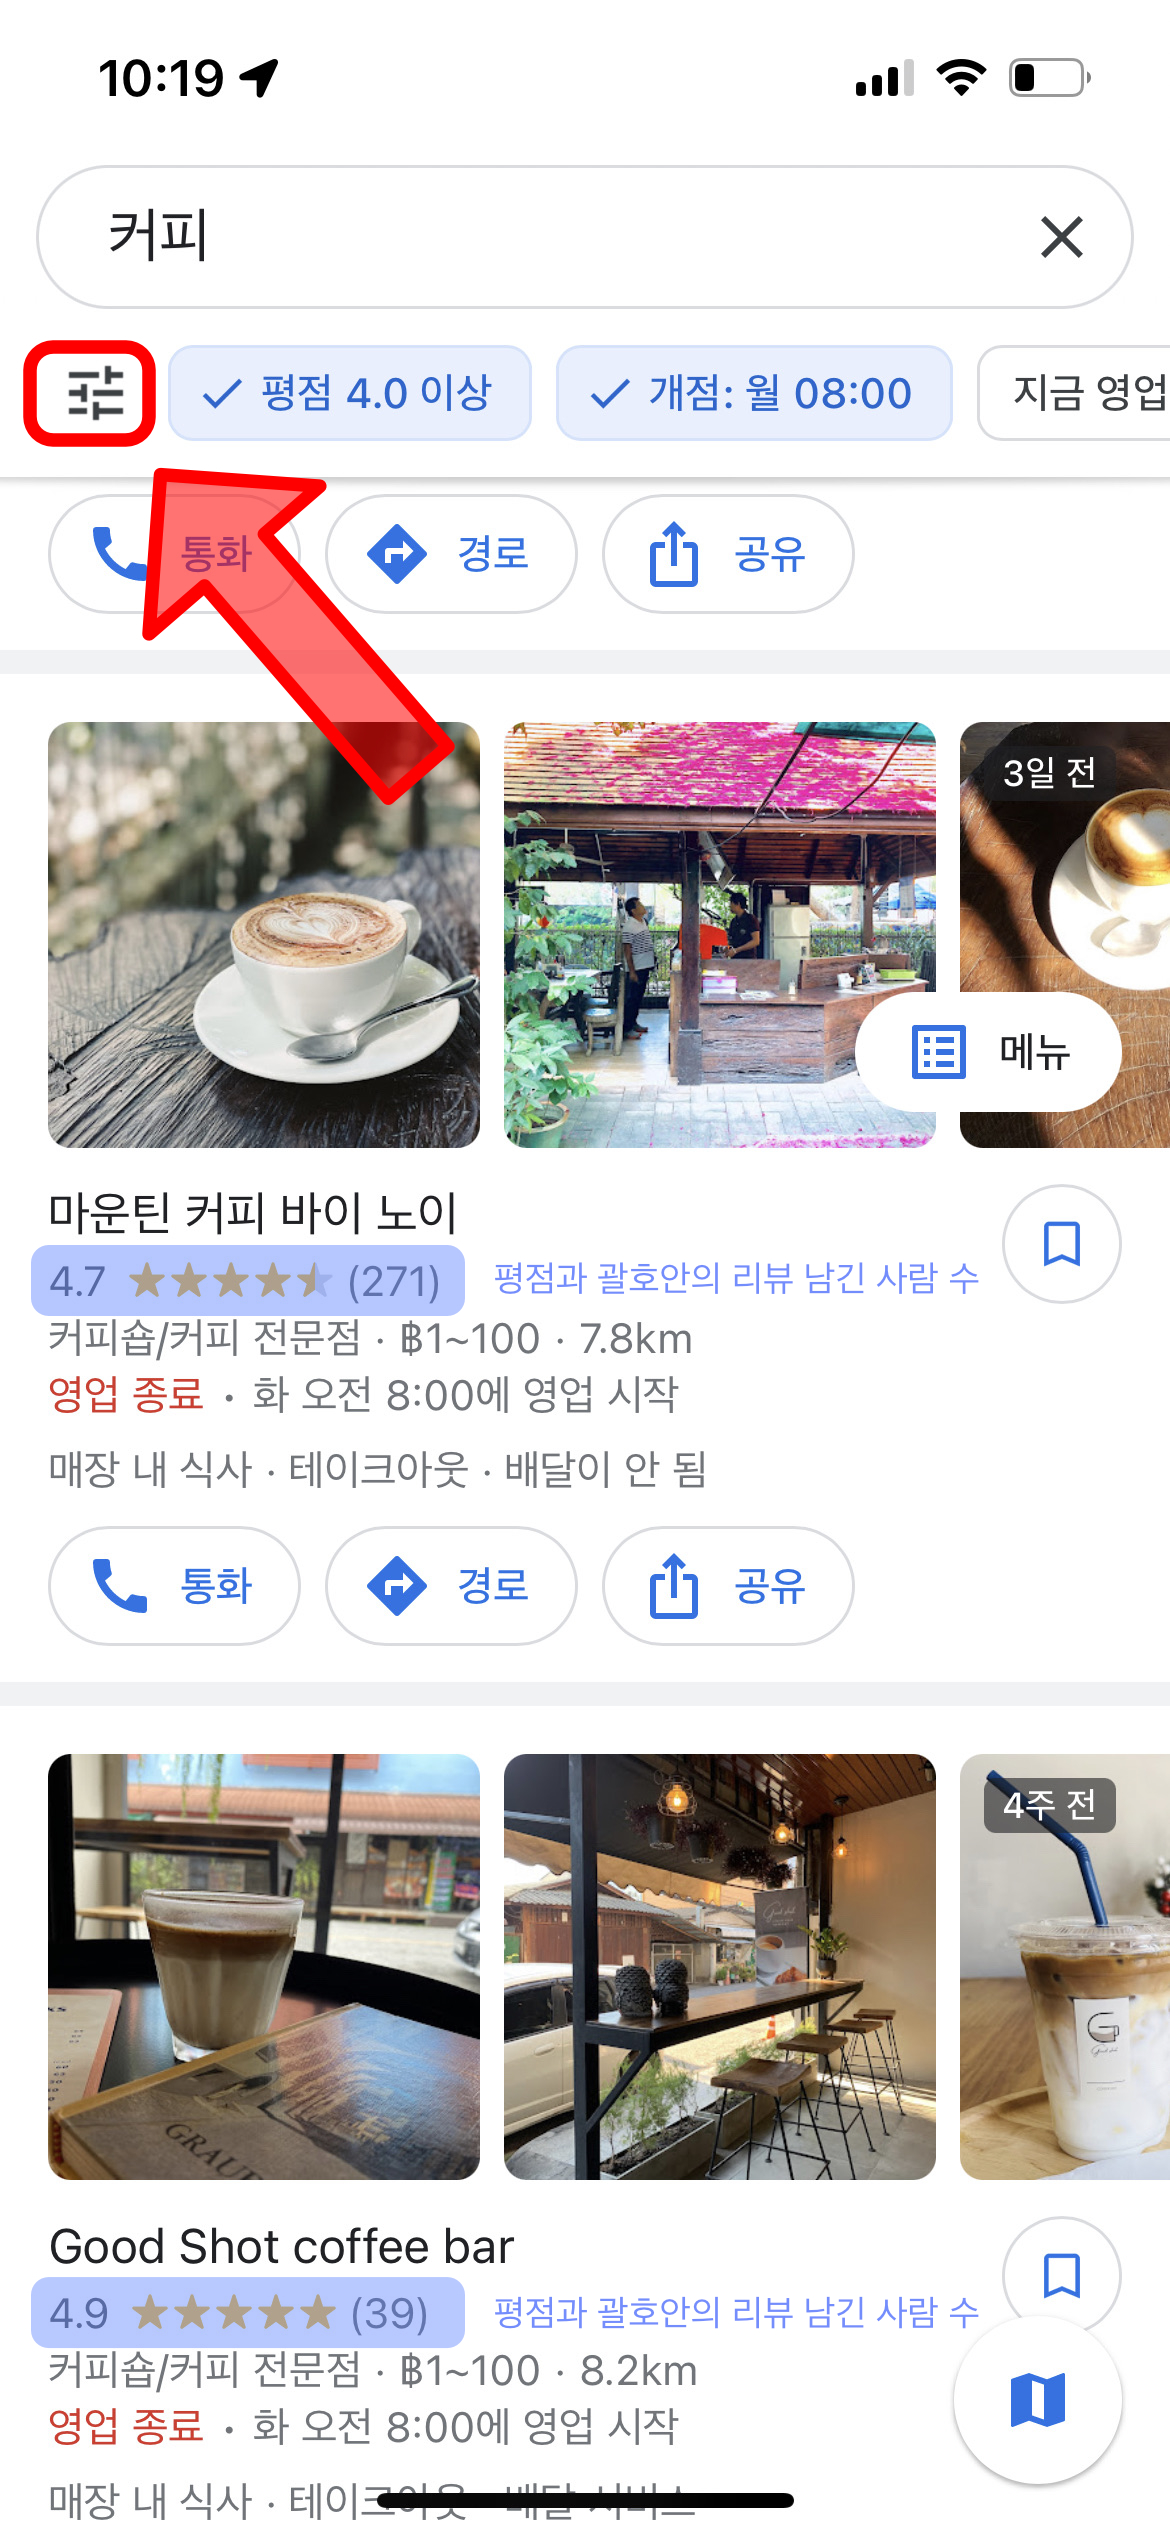 태국에서 맛집 찾기 - 구글맵 활용 04